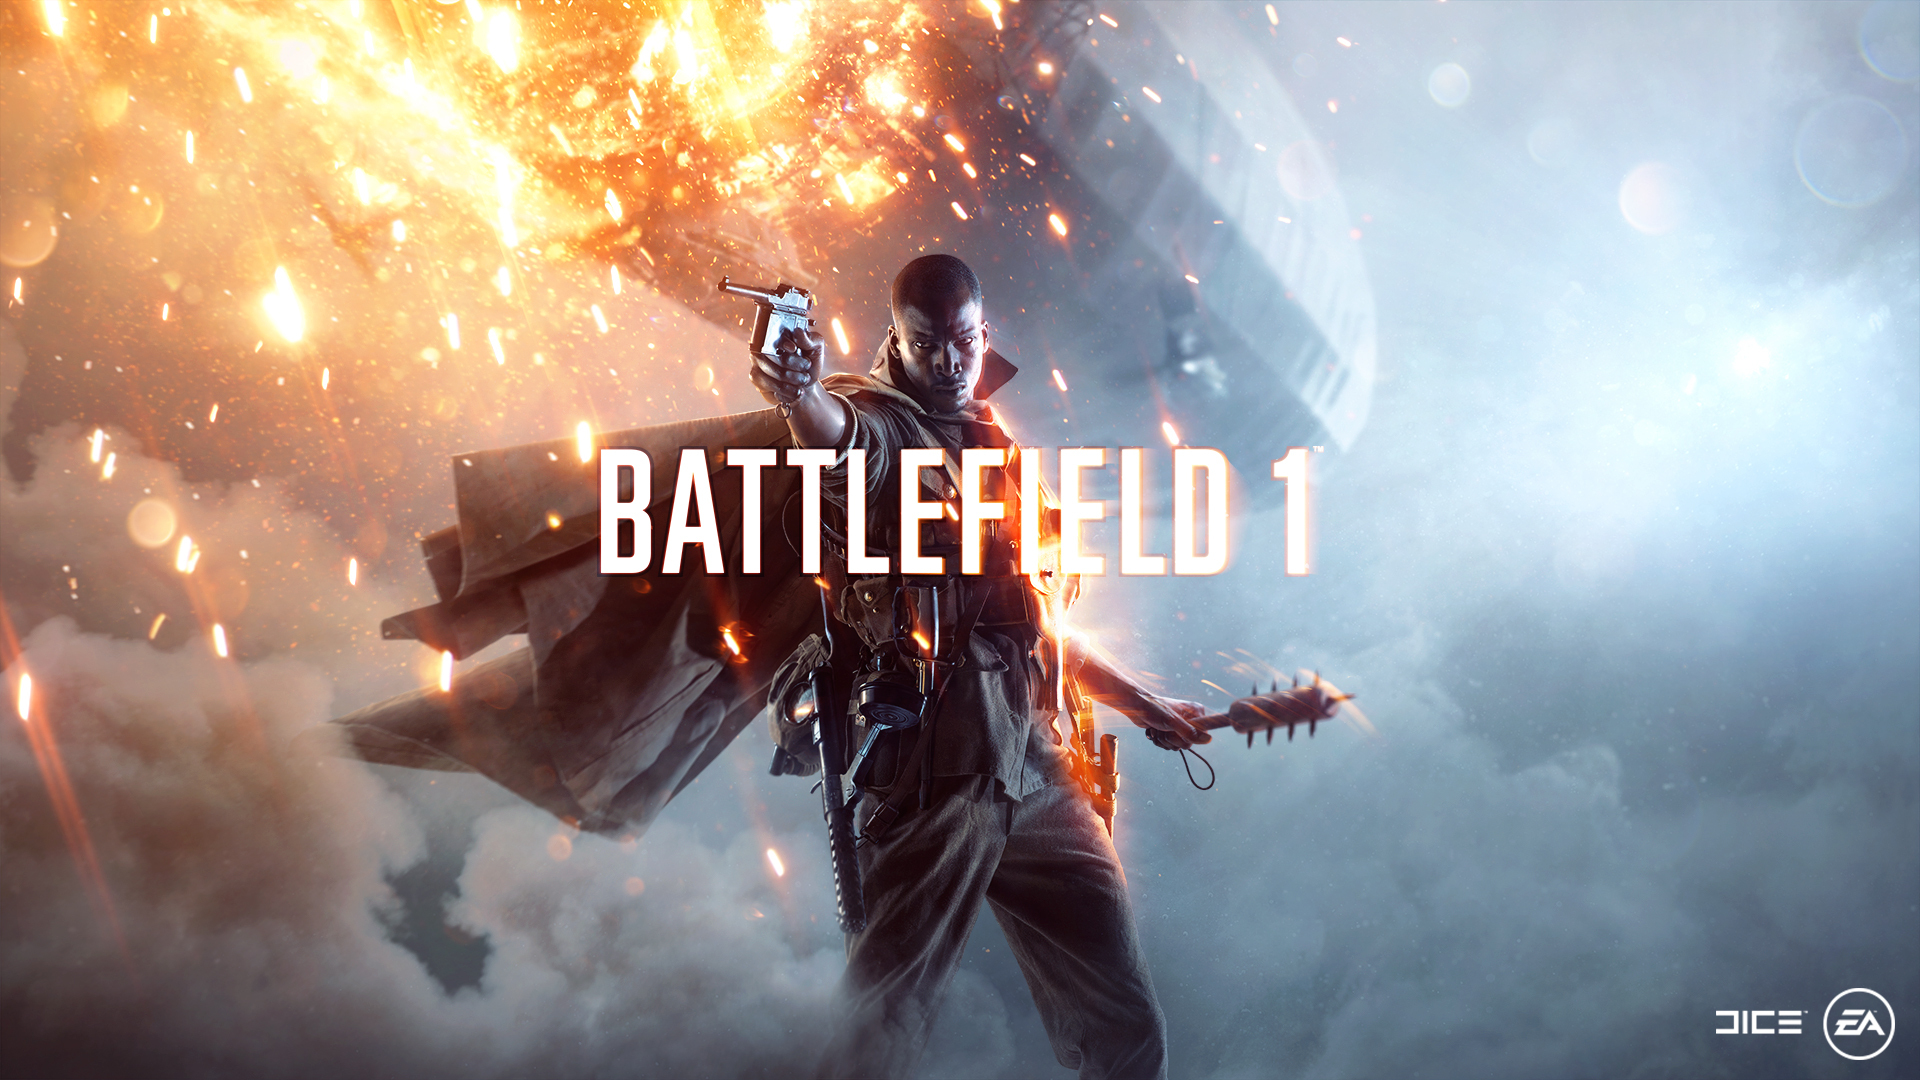 DICE skal snart begynne å teste ut spesialiseringer i Battlefield 1, sier de på Reddit.